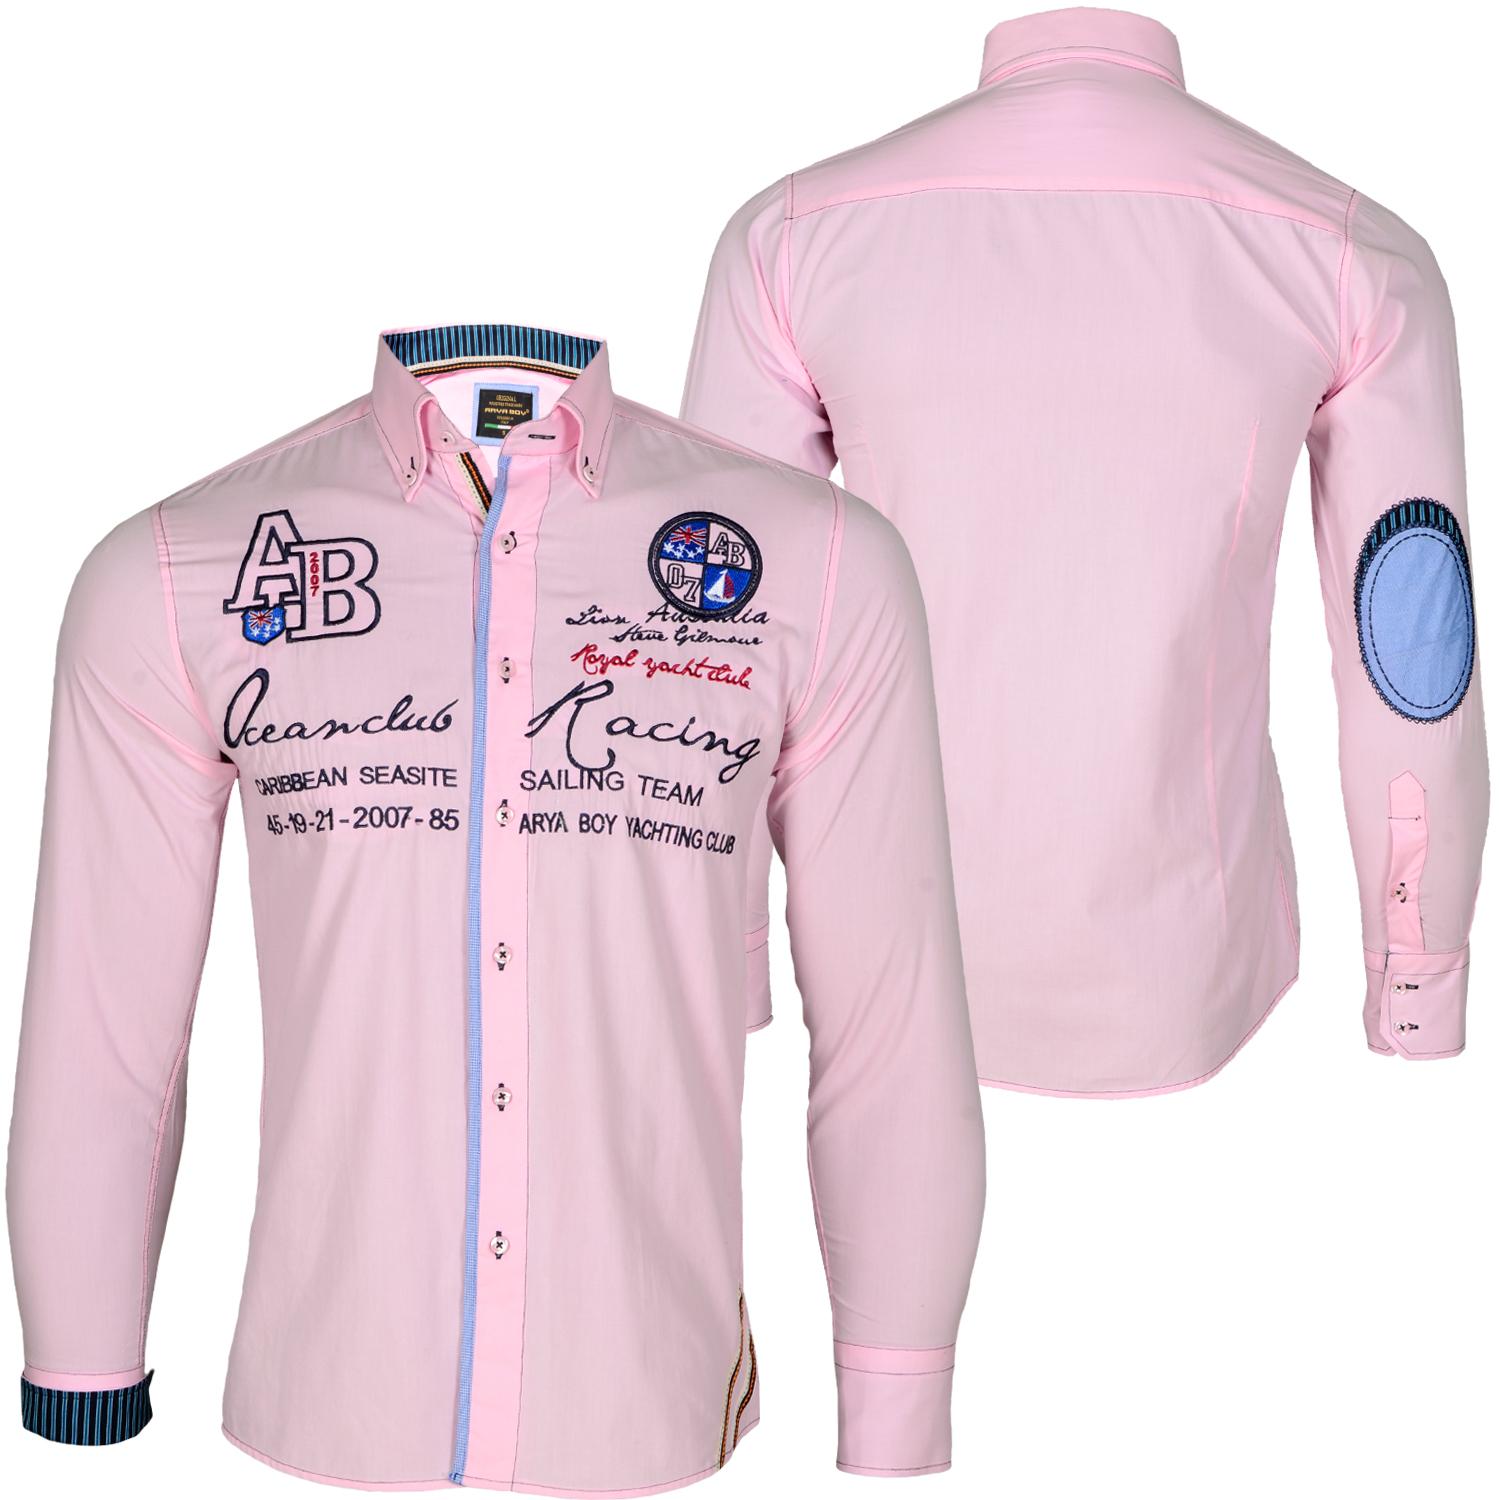 Foto Wam Denim Oceanclub Racing Camisas Rosa